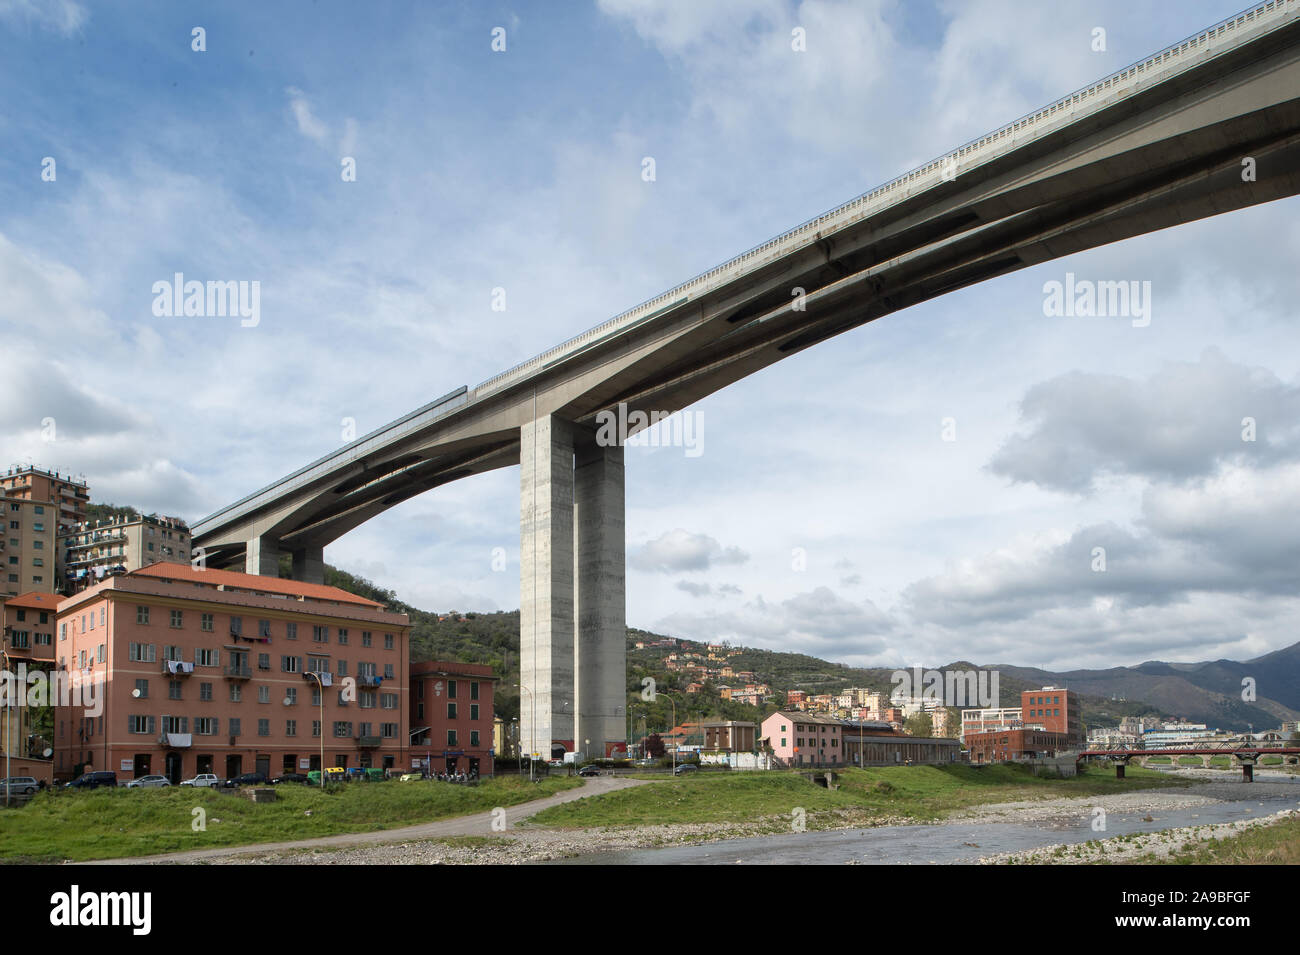 06.04.2019, Genoa, Liguria, Italy - Staglieno, Italy - The Viadotto Bisagno of the Italian motorway A12 in the city quarter Staglieno. 0CE190406D010CA Stock Photo